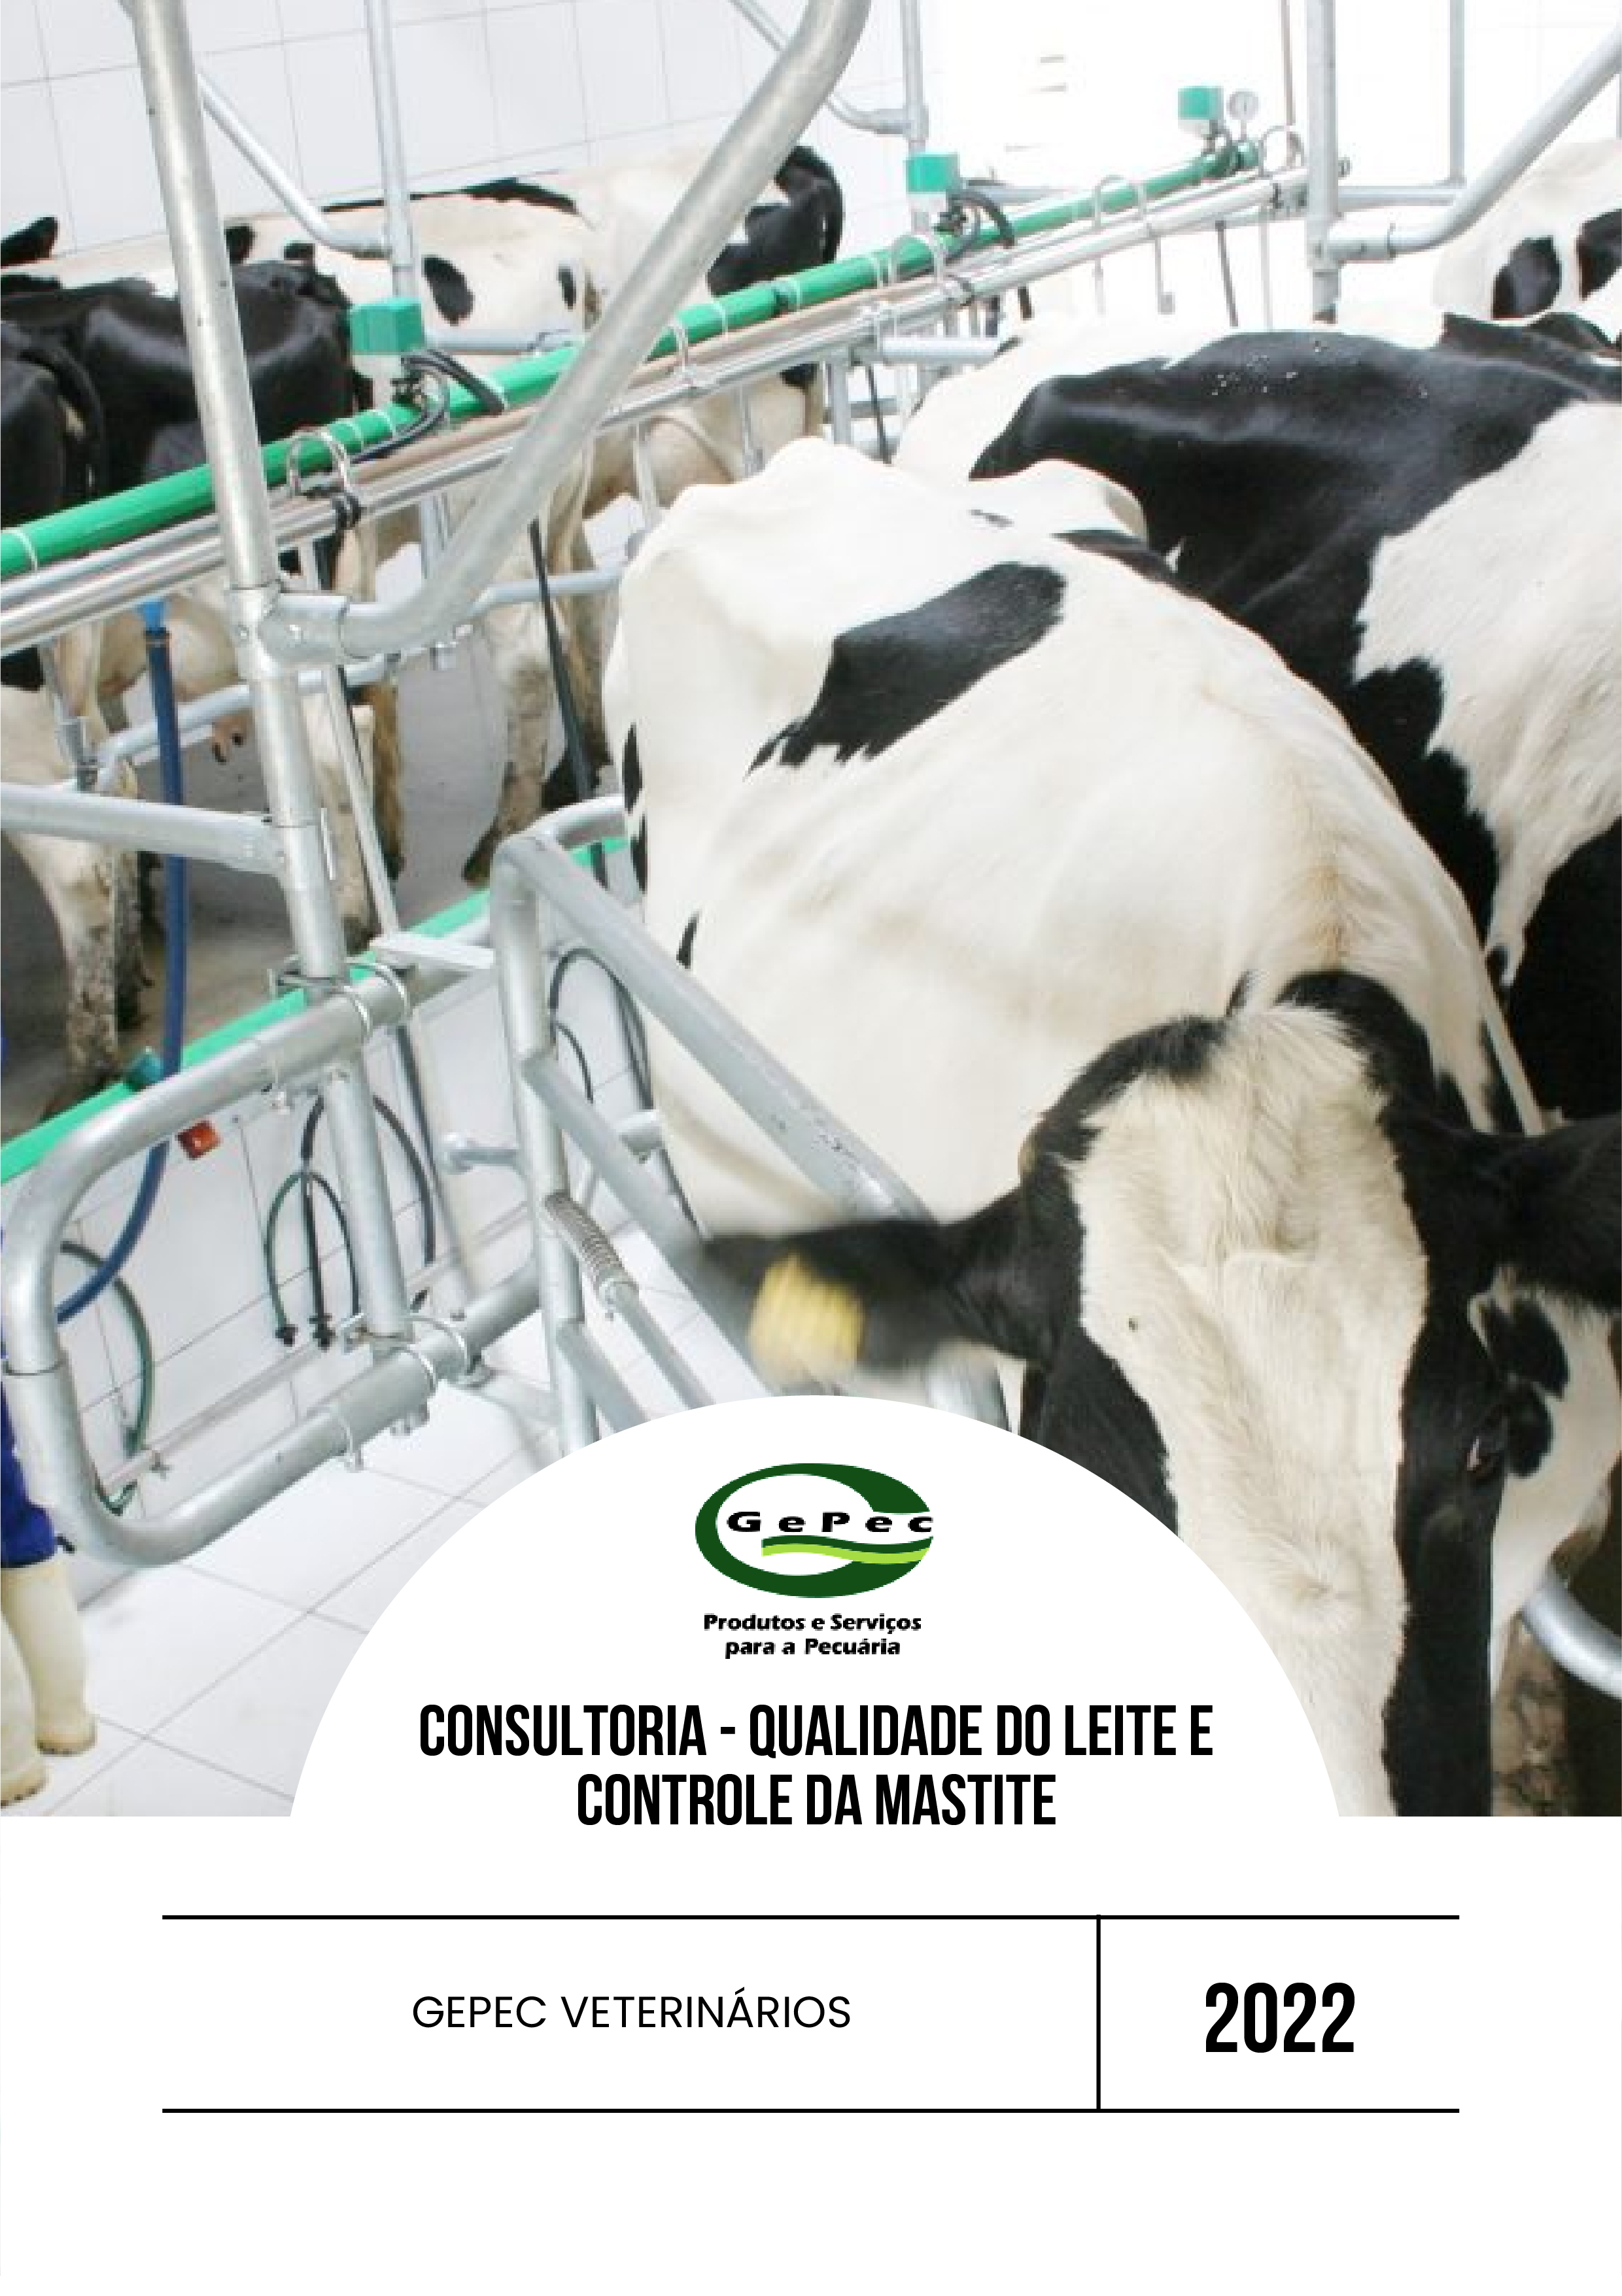 O programa de consultoria em qualidade do leite da empresa GEPEC visa garantir o controle da mastite, estabelecendo processos em prol da redução da Contagem de Células Somáticas (CCS), como também da Contagem Padrão em Placas (CPP), antiga CBT do leite.